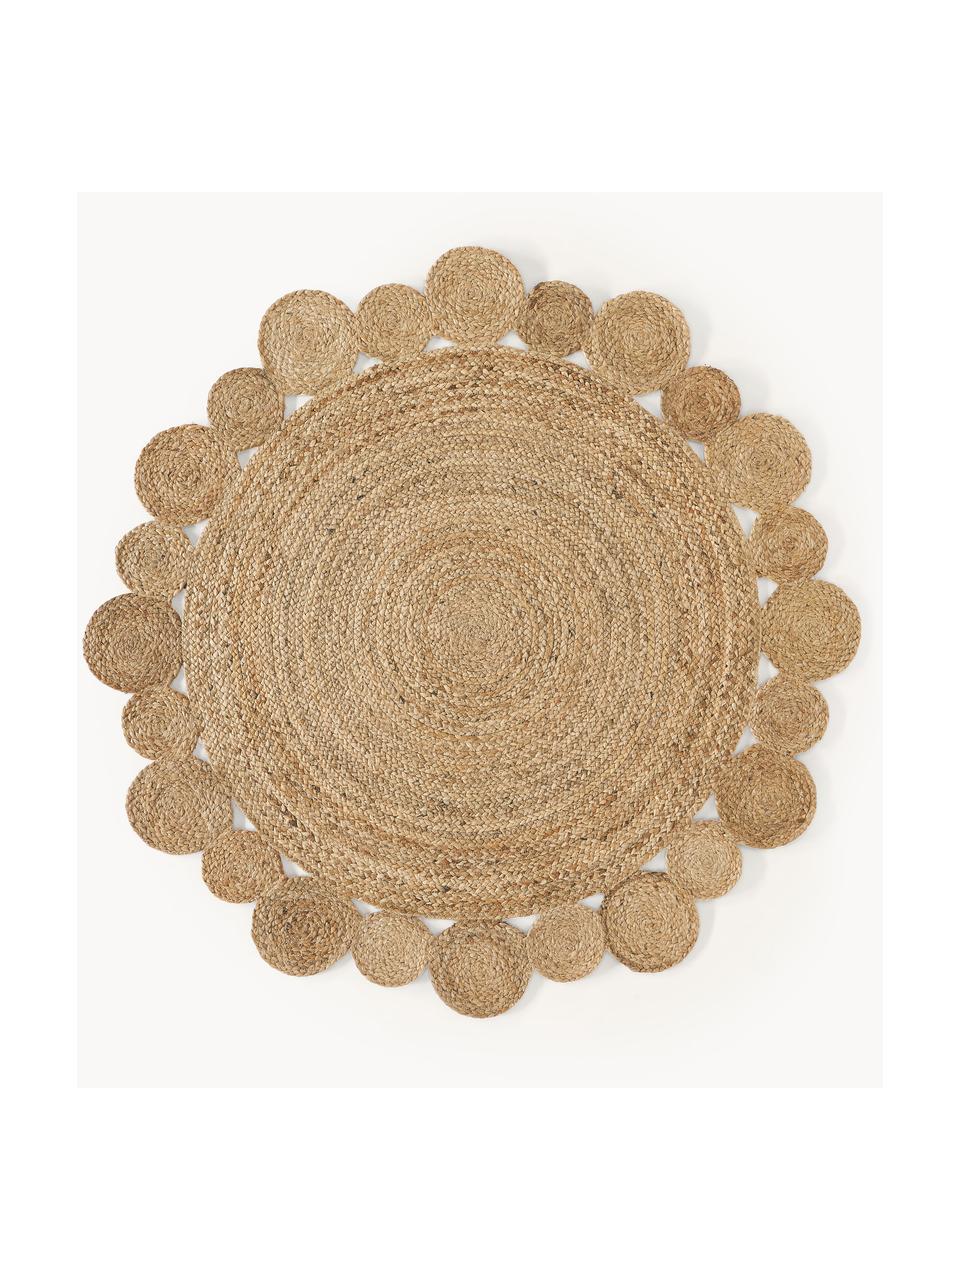 Okrúhly ručne tkaný jutový koberec  Niago, 100 % juta, Hnedá, Ø 150 cm (veľkosť M)